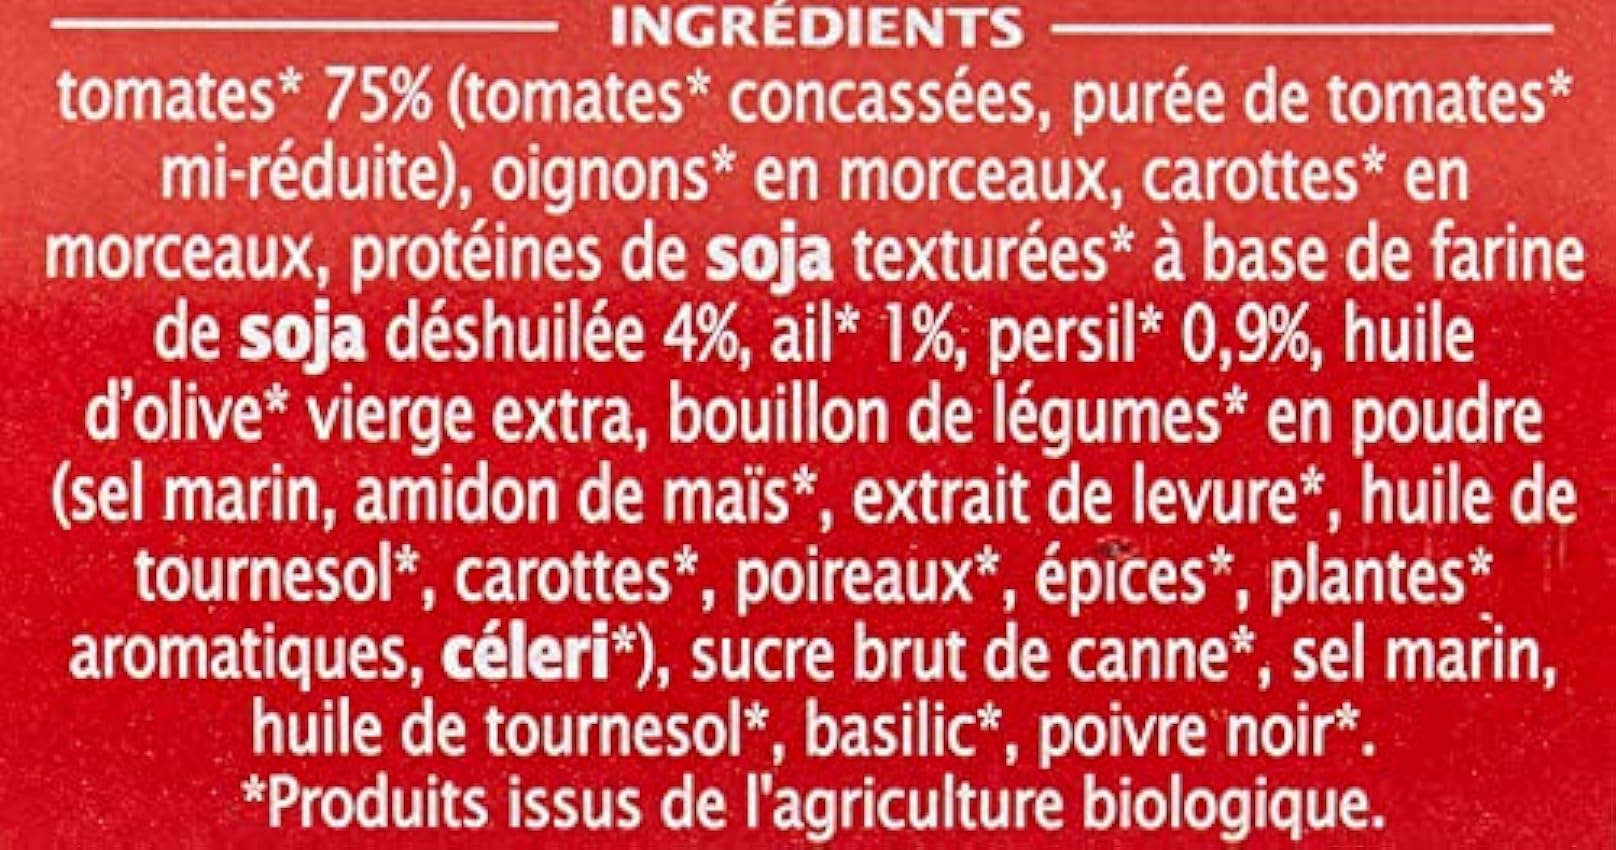 Jardin BiO étic Sauce végétale façon Bolognaise Ail Persil, 200 g mYBcYziV